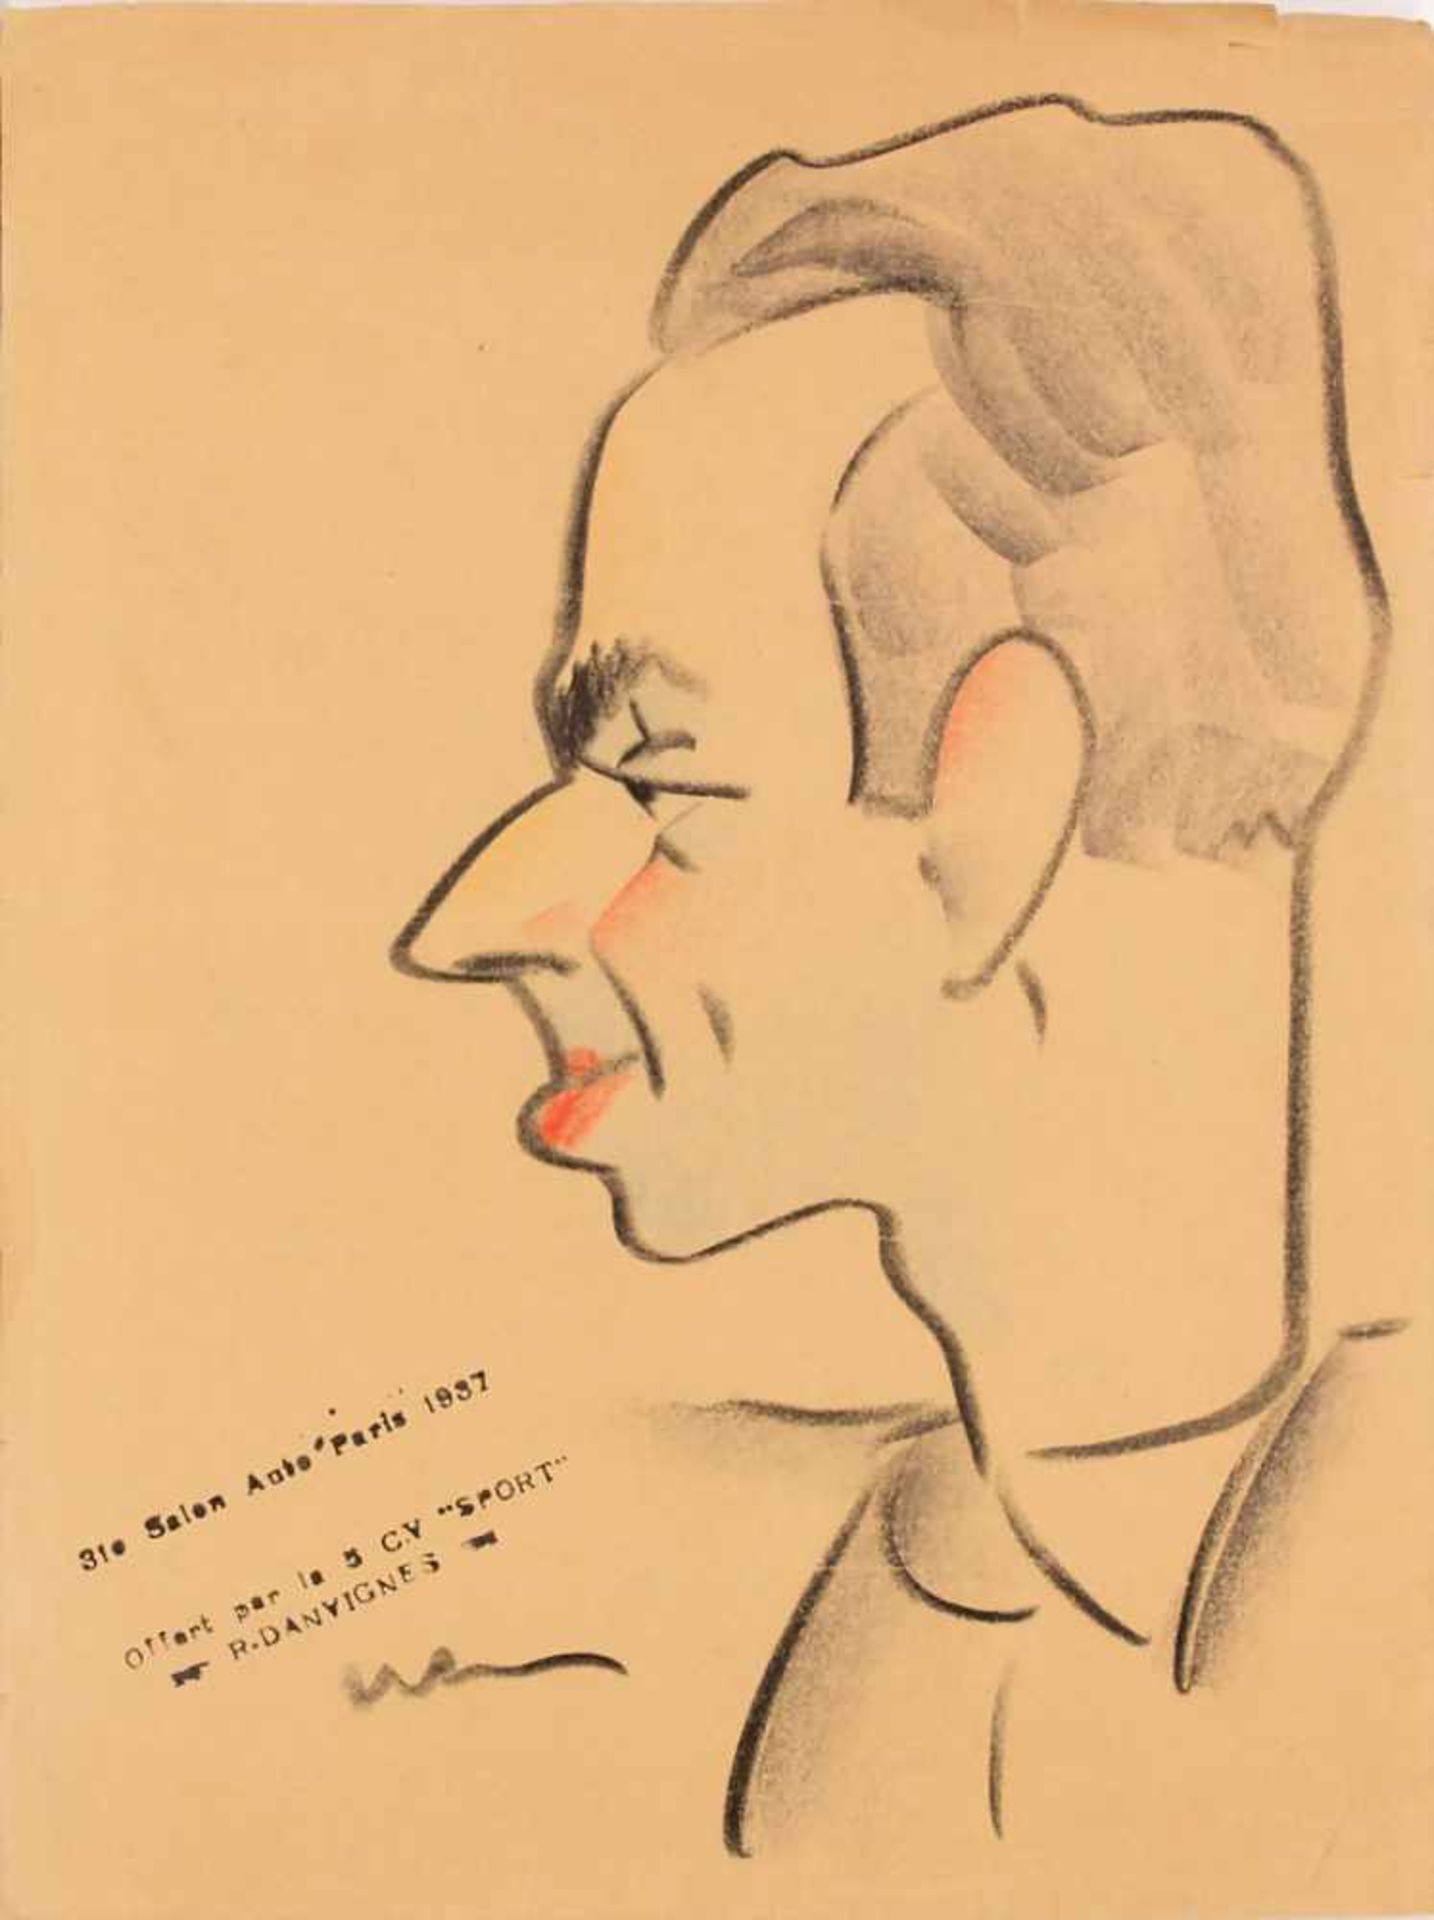 Künstler des 1930er Jahre 'Herrenporträt' / 'A man's portrait'Technik: Kreide auf Papier, Datierung: